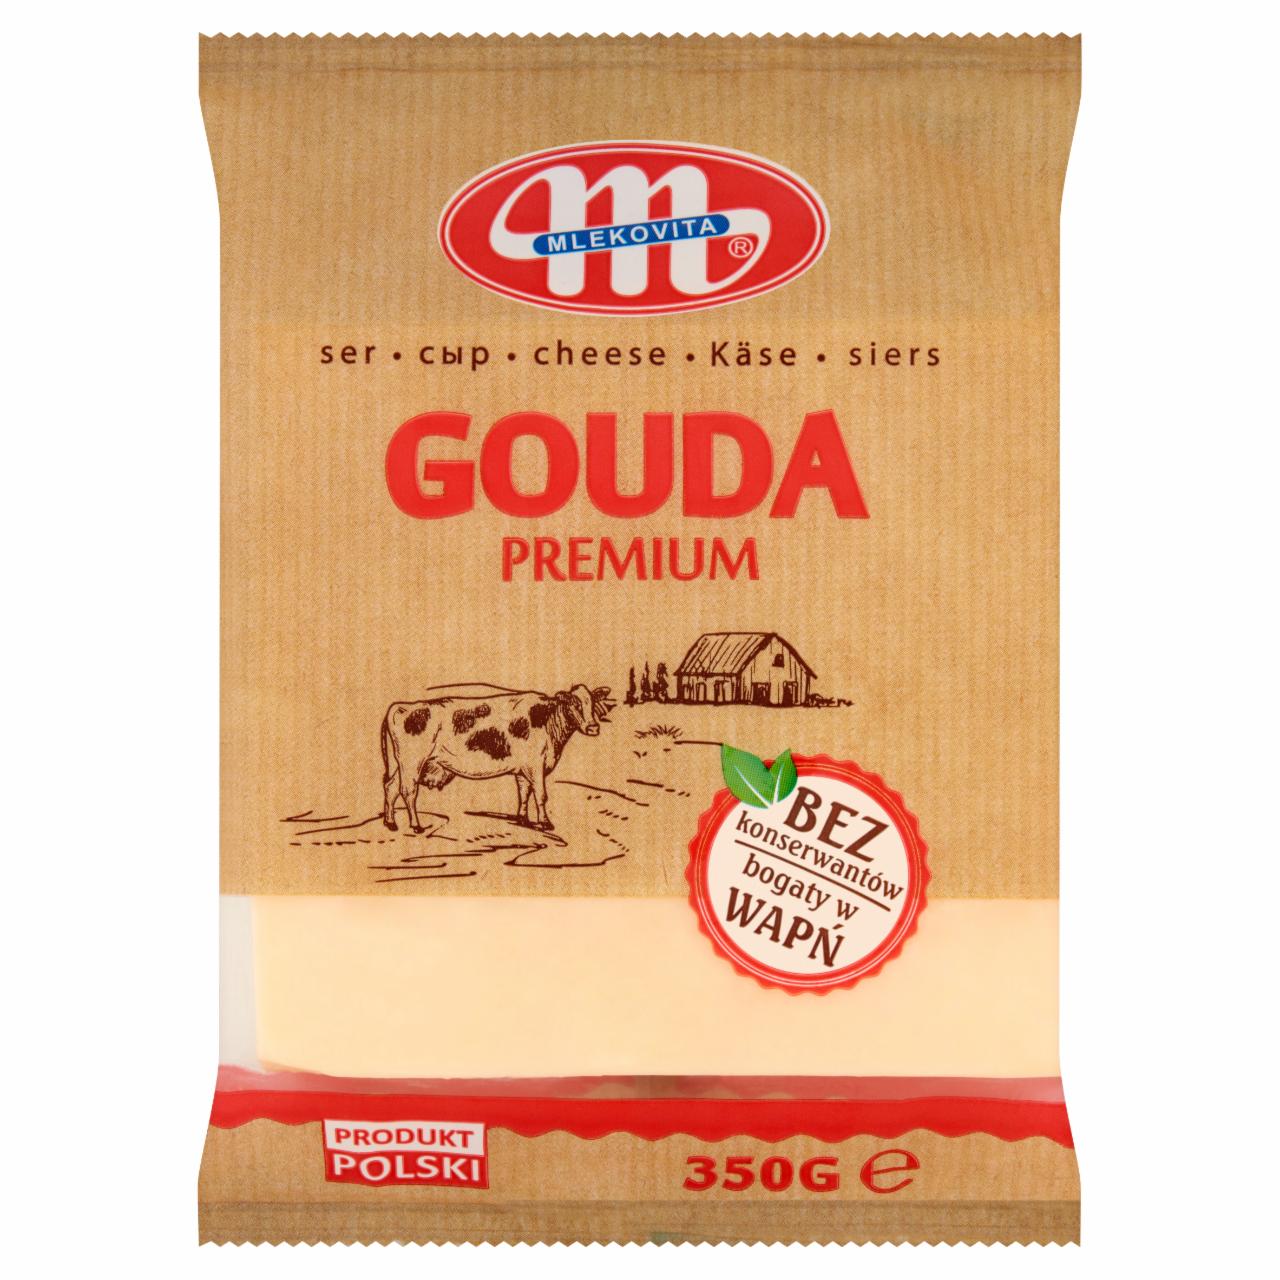 Fotografie - Gouda Premium Cheese Mlekovita